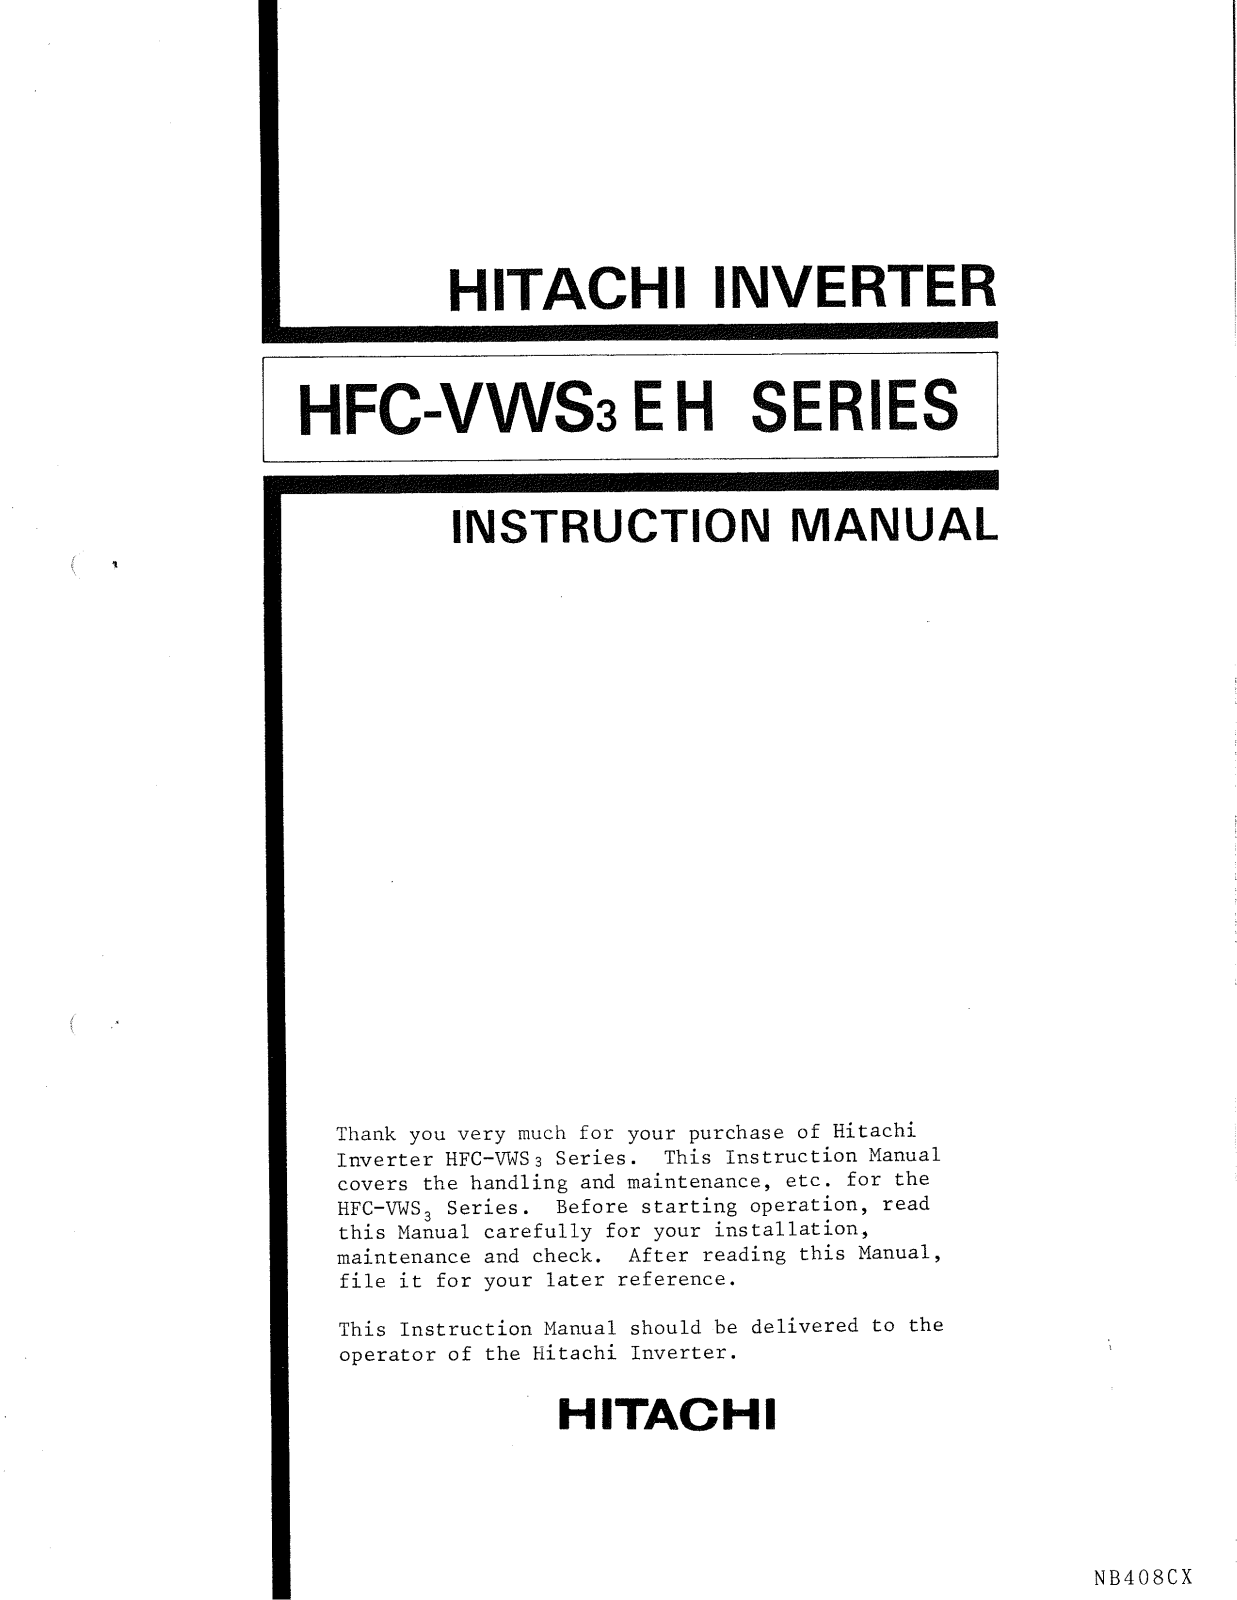 Hitachi HFC-VWS3 User Manual